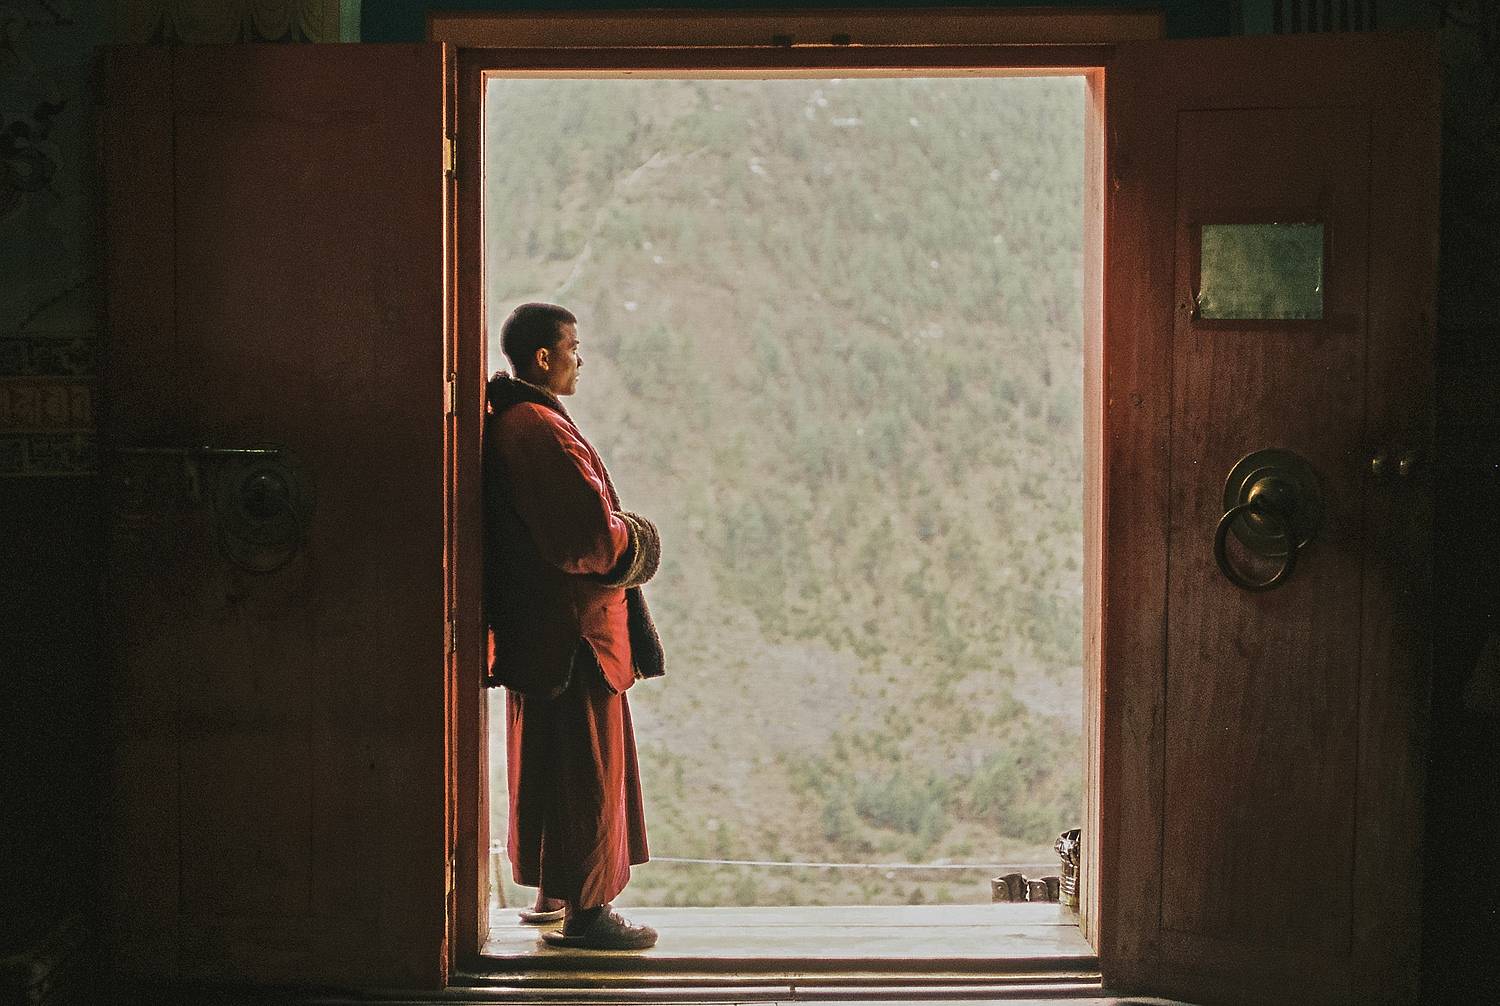 Boeddhismecursus en meditatie met monniken in Nepal